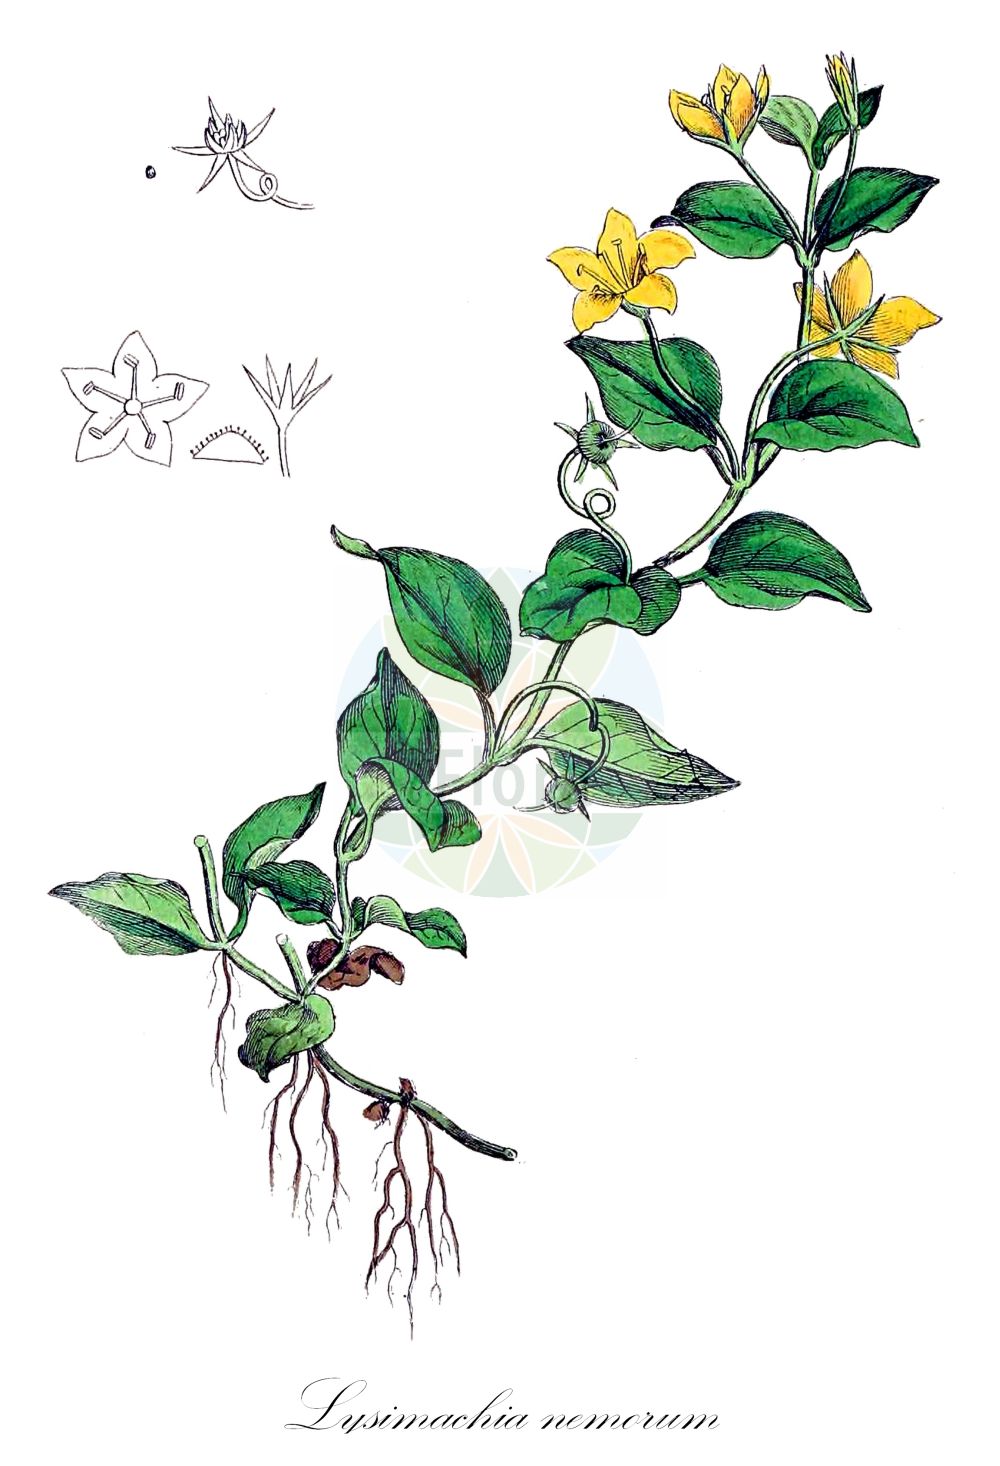 Historische Abbildung von Lysimachia nemorum (Hain-Gilbweiderich - Yellow Pimpernel). Das Bild zeigt Blatt, Bluete, Frucht und Same. ---- Historical Drawing of Lysimachia nemorum (Hain-Gilbweiderich - Yellow Pimpernel). The image is showing leaf, flower, fruit and seed.(Lysimachia nemorum,Hain-Gilbweiderich,Yellow Pimpernel,Lysimachia nemorum,Hain-Gilbweiderich,Yellow Pimpernel,Lysimachia,Gilbweiderich,Yellow Loosestrife,Primulaceae,Schlüsselblumengewächse,Primrose family,Blatt,Bluete,Frucht,Same,leaf,flower,fruit,seed,Sowerby (1790-1813))